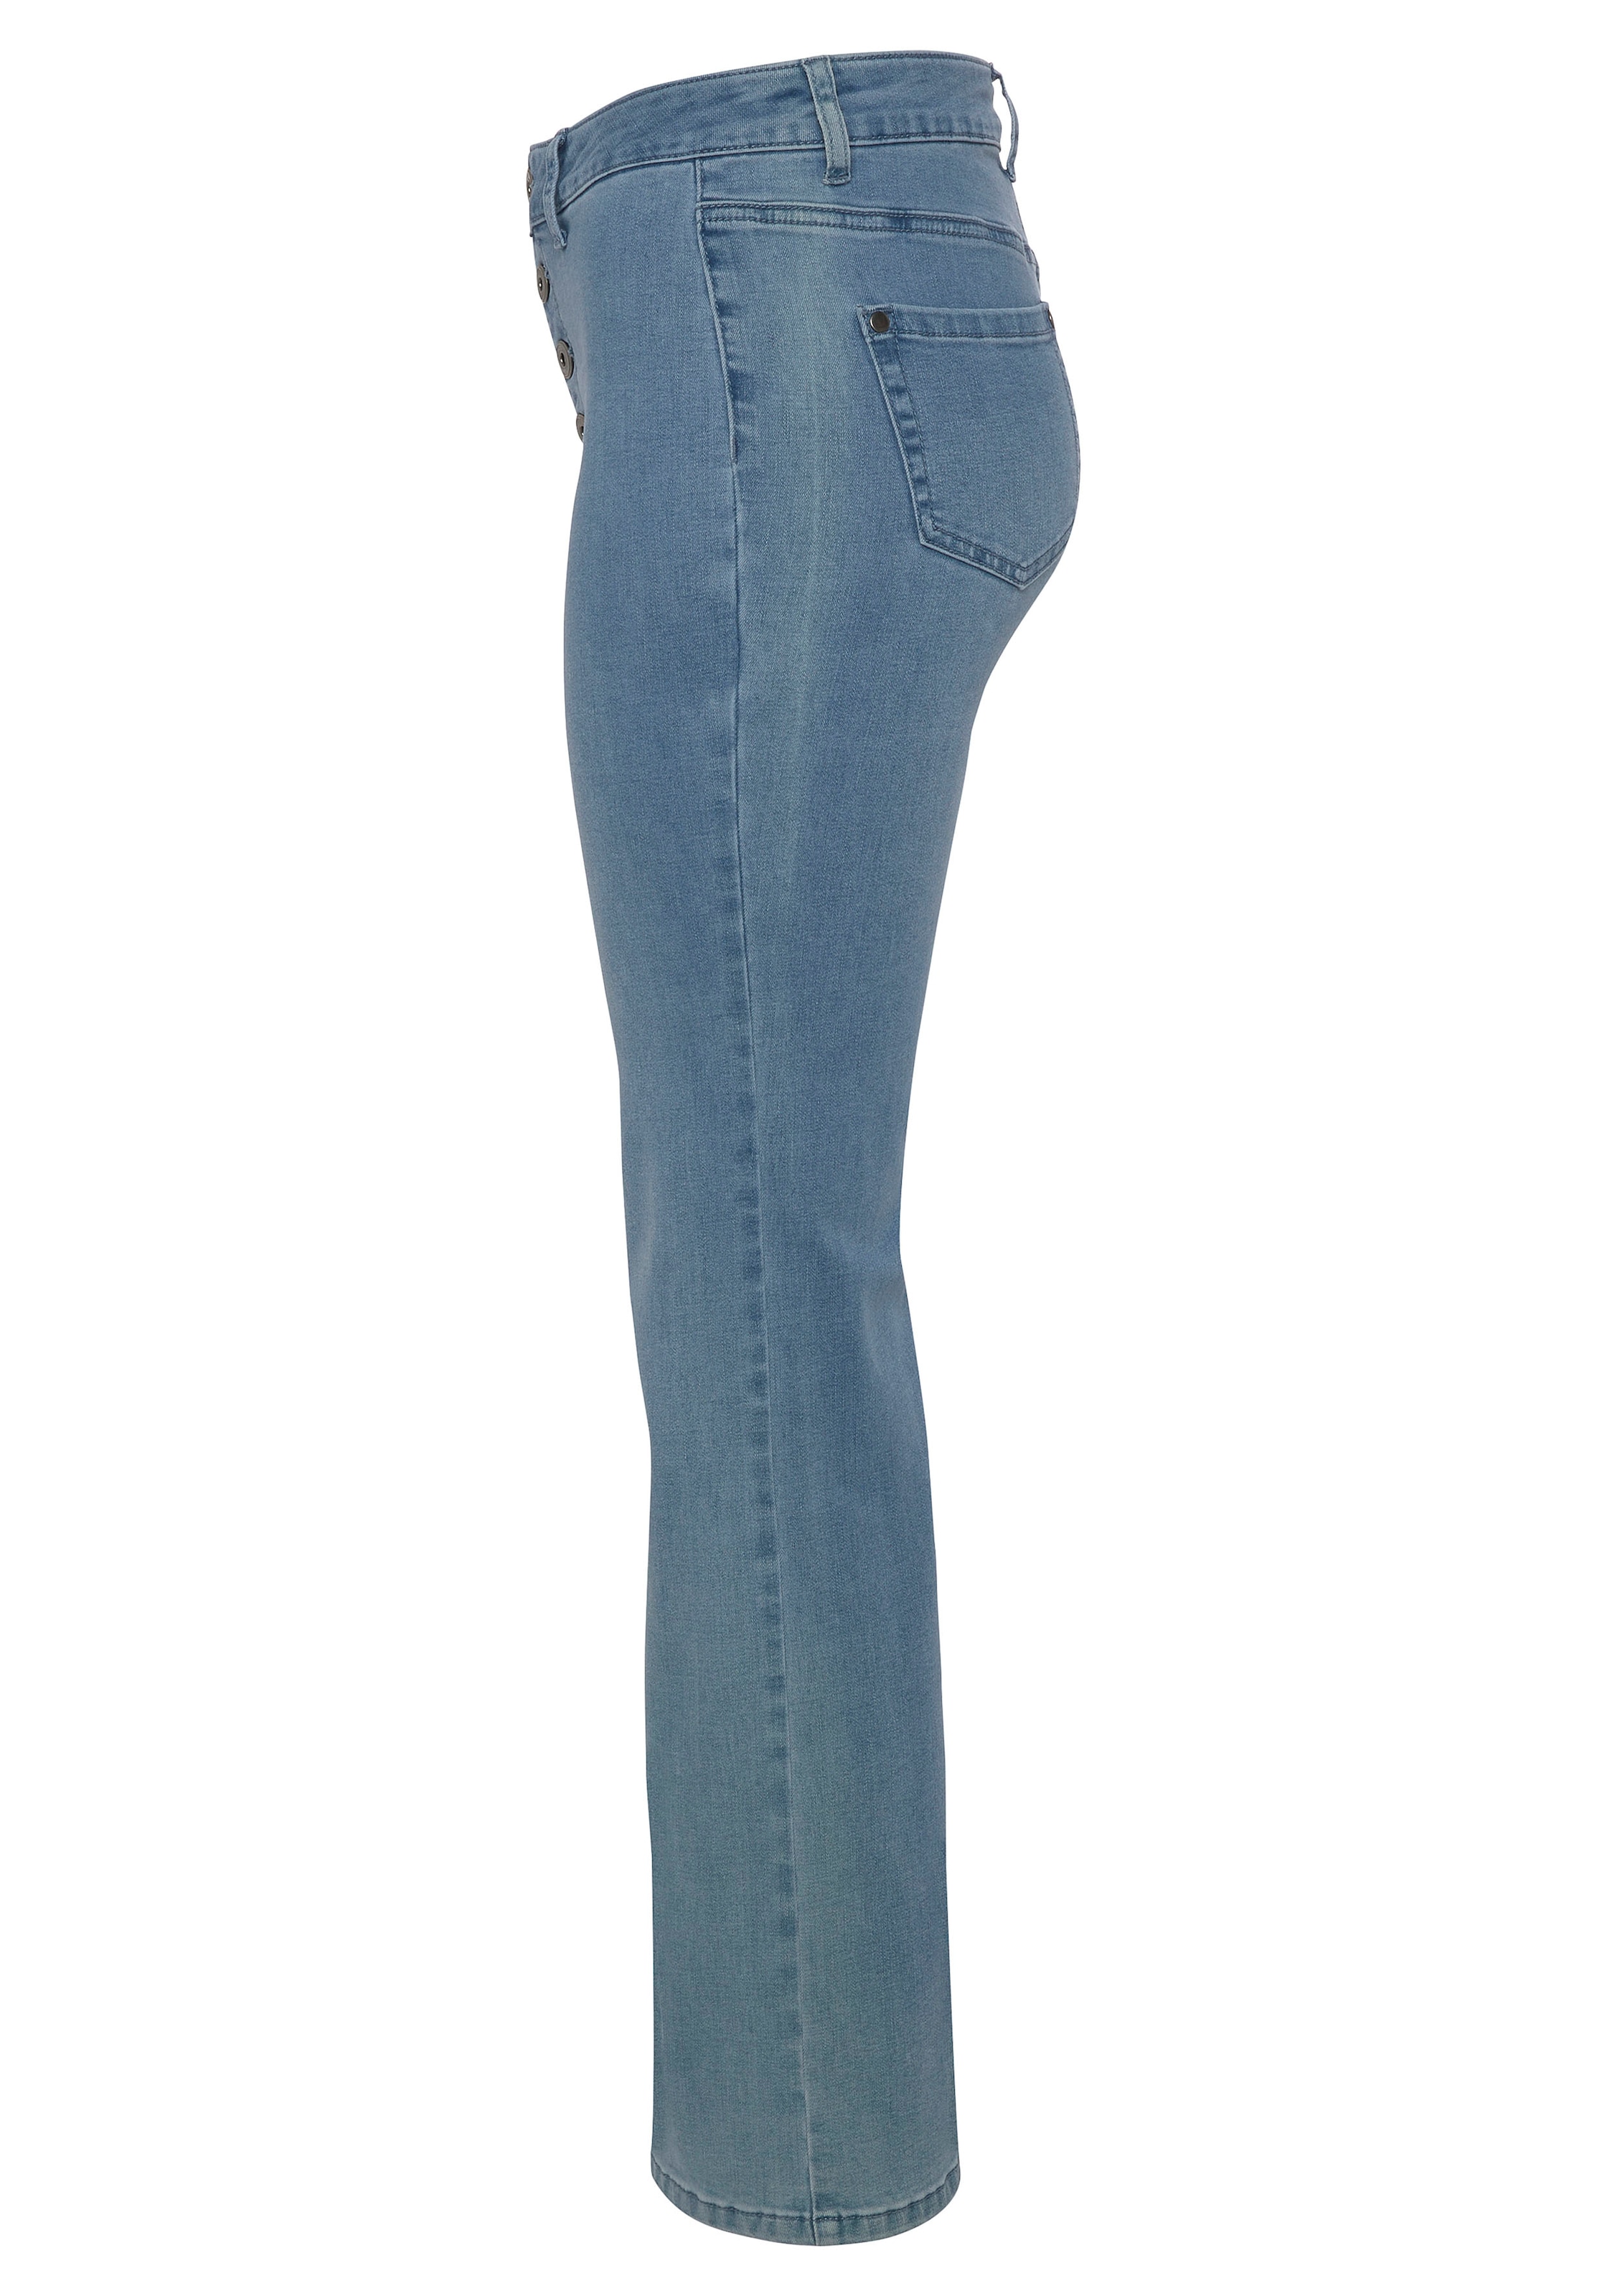 AJC Ankle-Jeans, in ausgestellter Bootcut-Form in knöchelfreier Länge